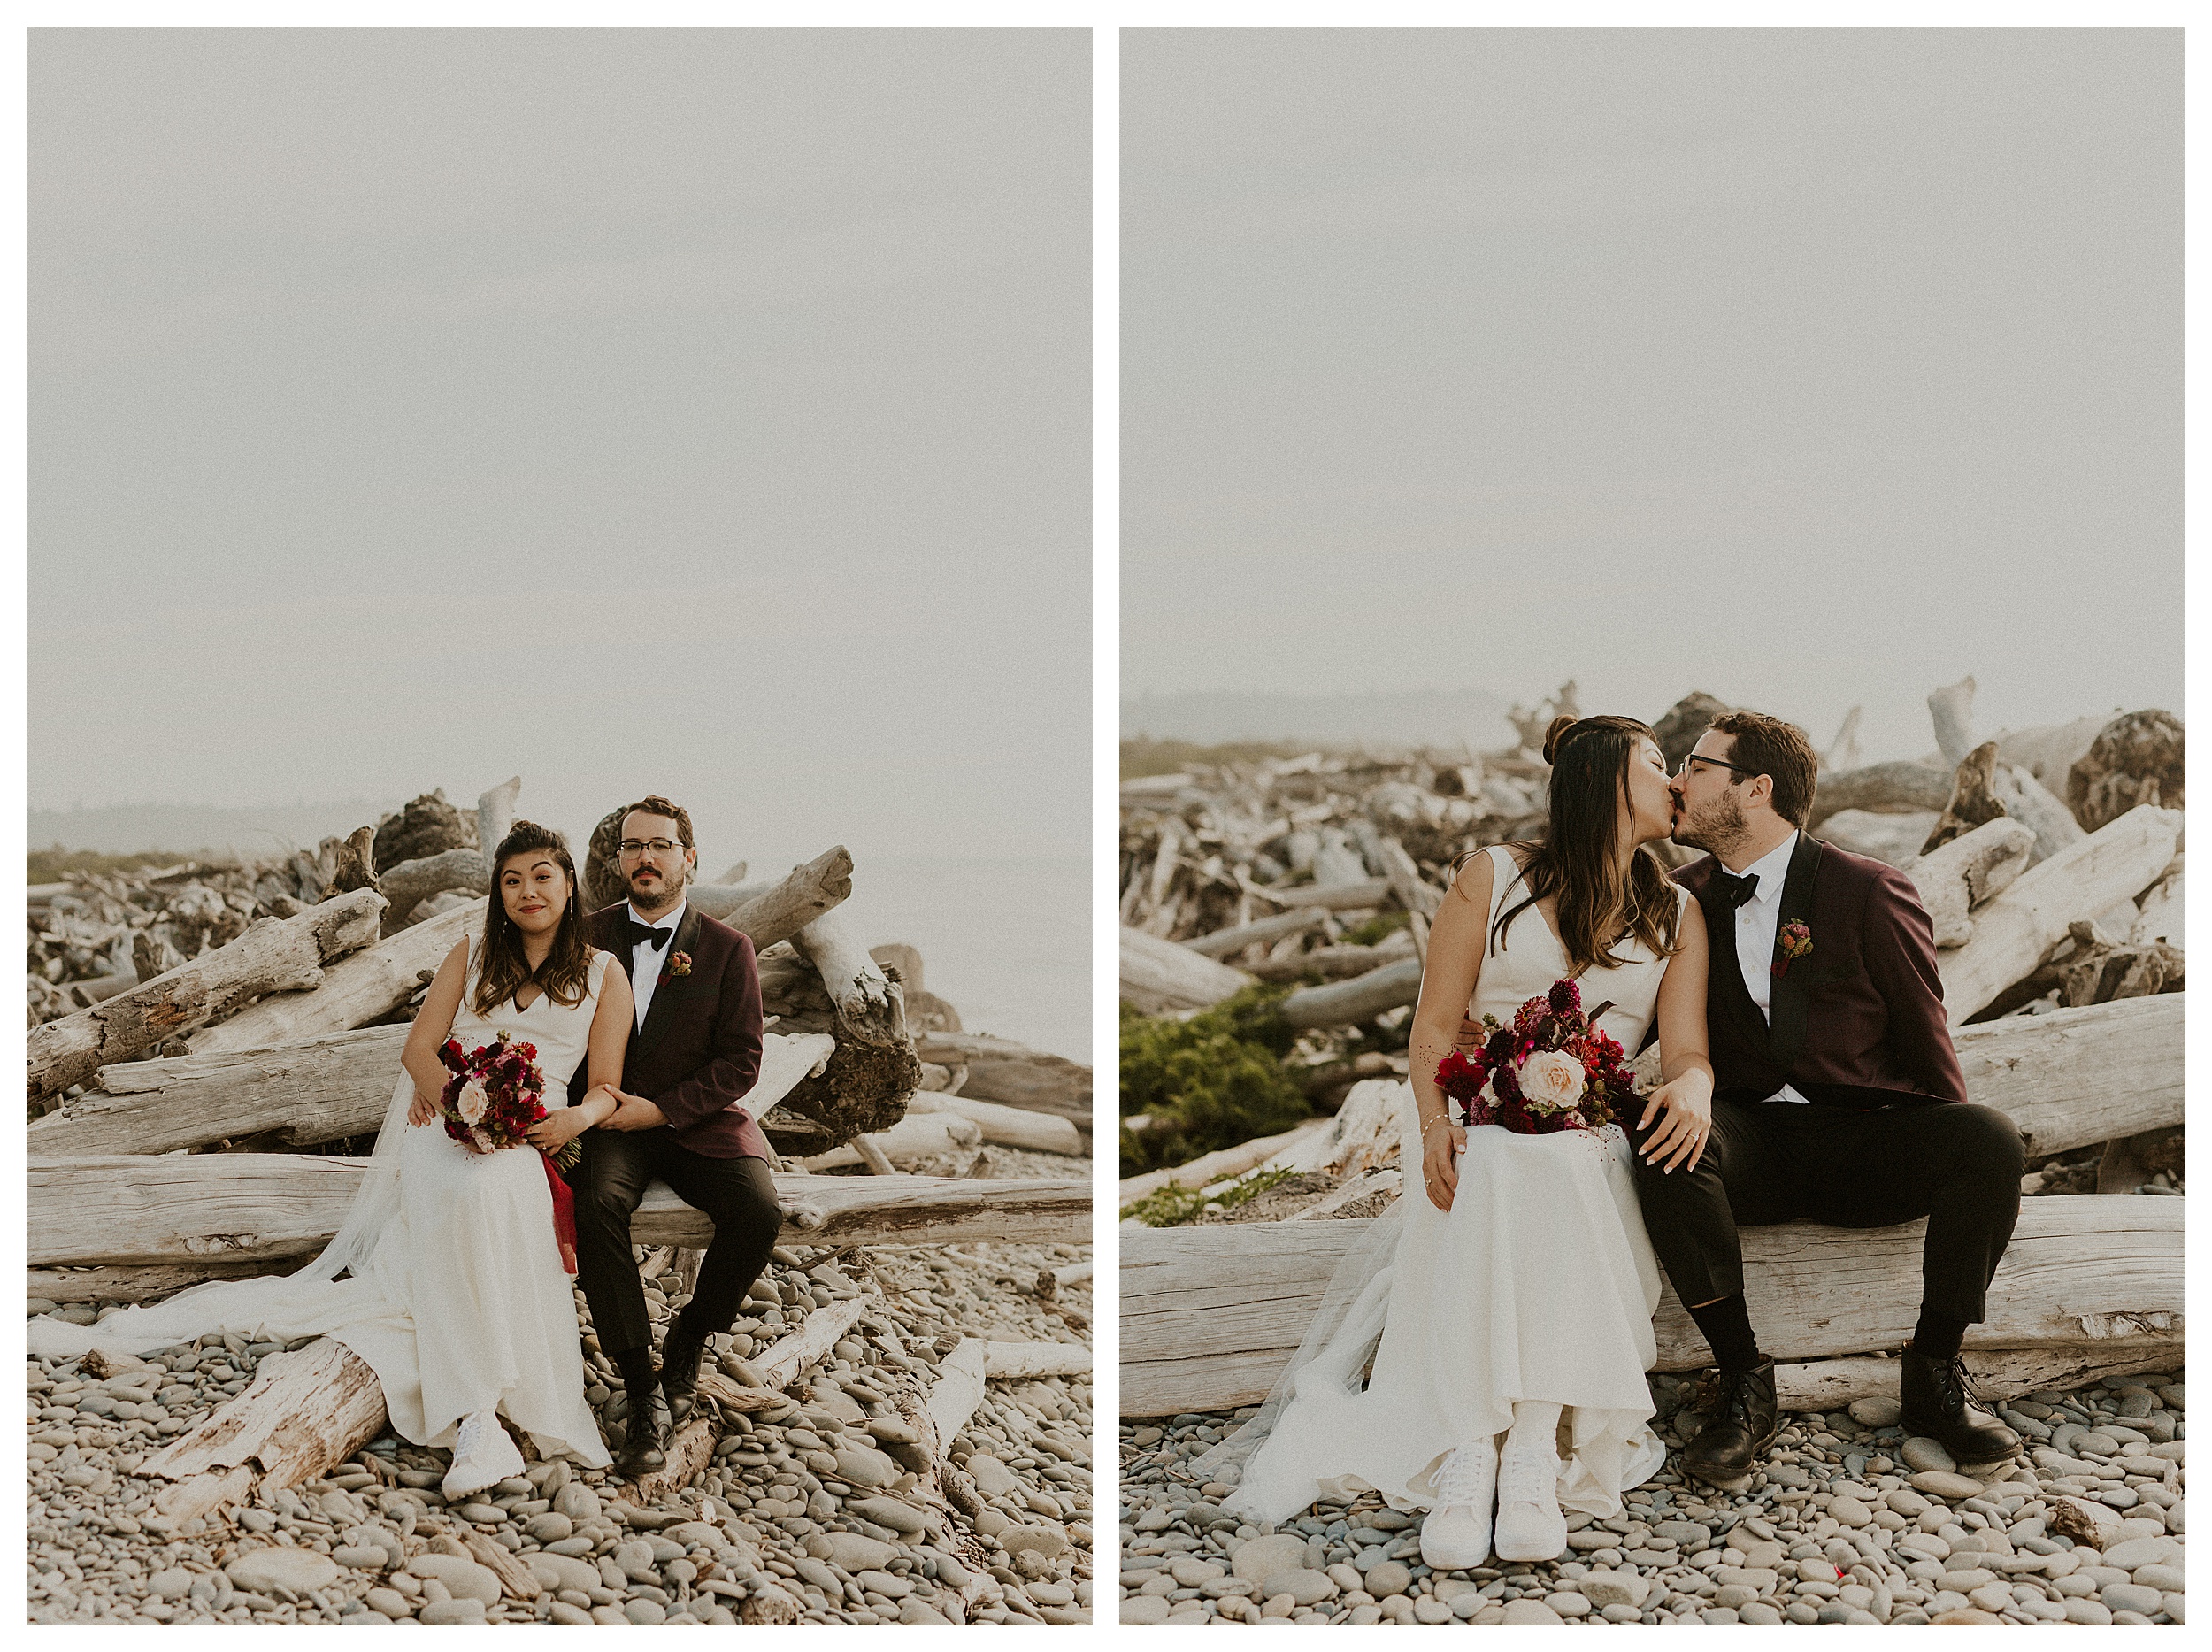 bride and groom sitting together  olympic national park coastal landscape

